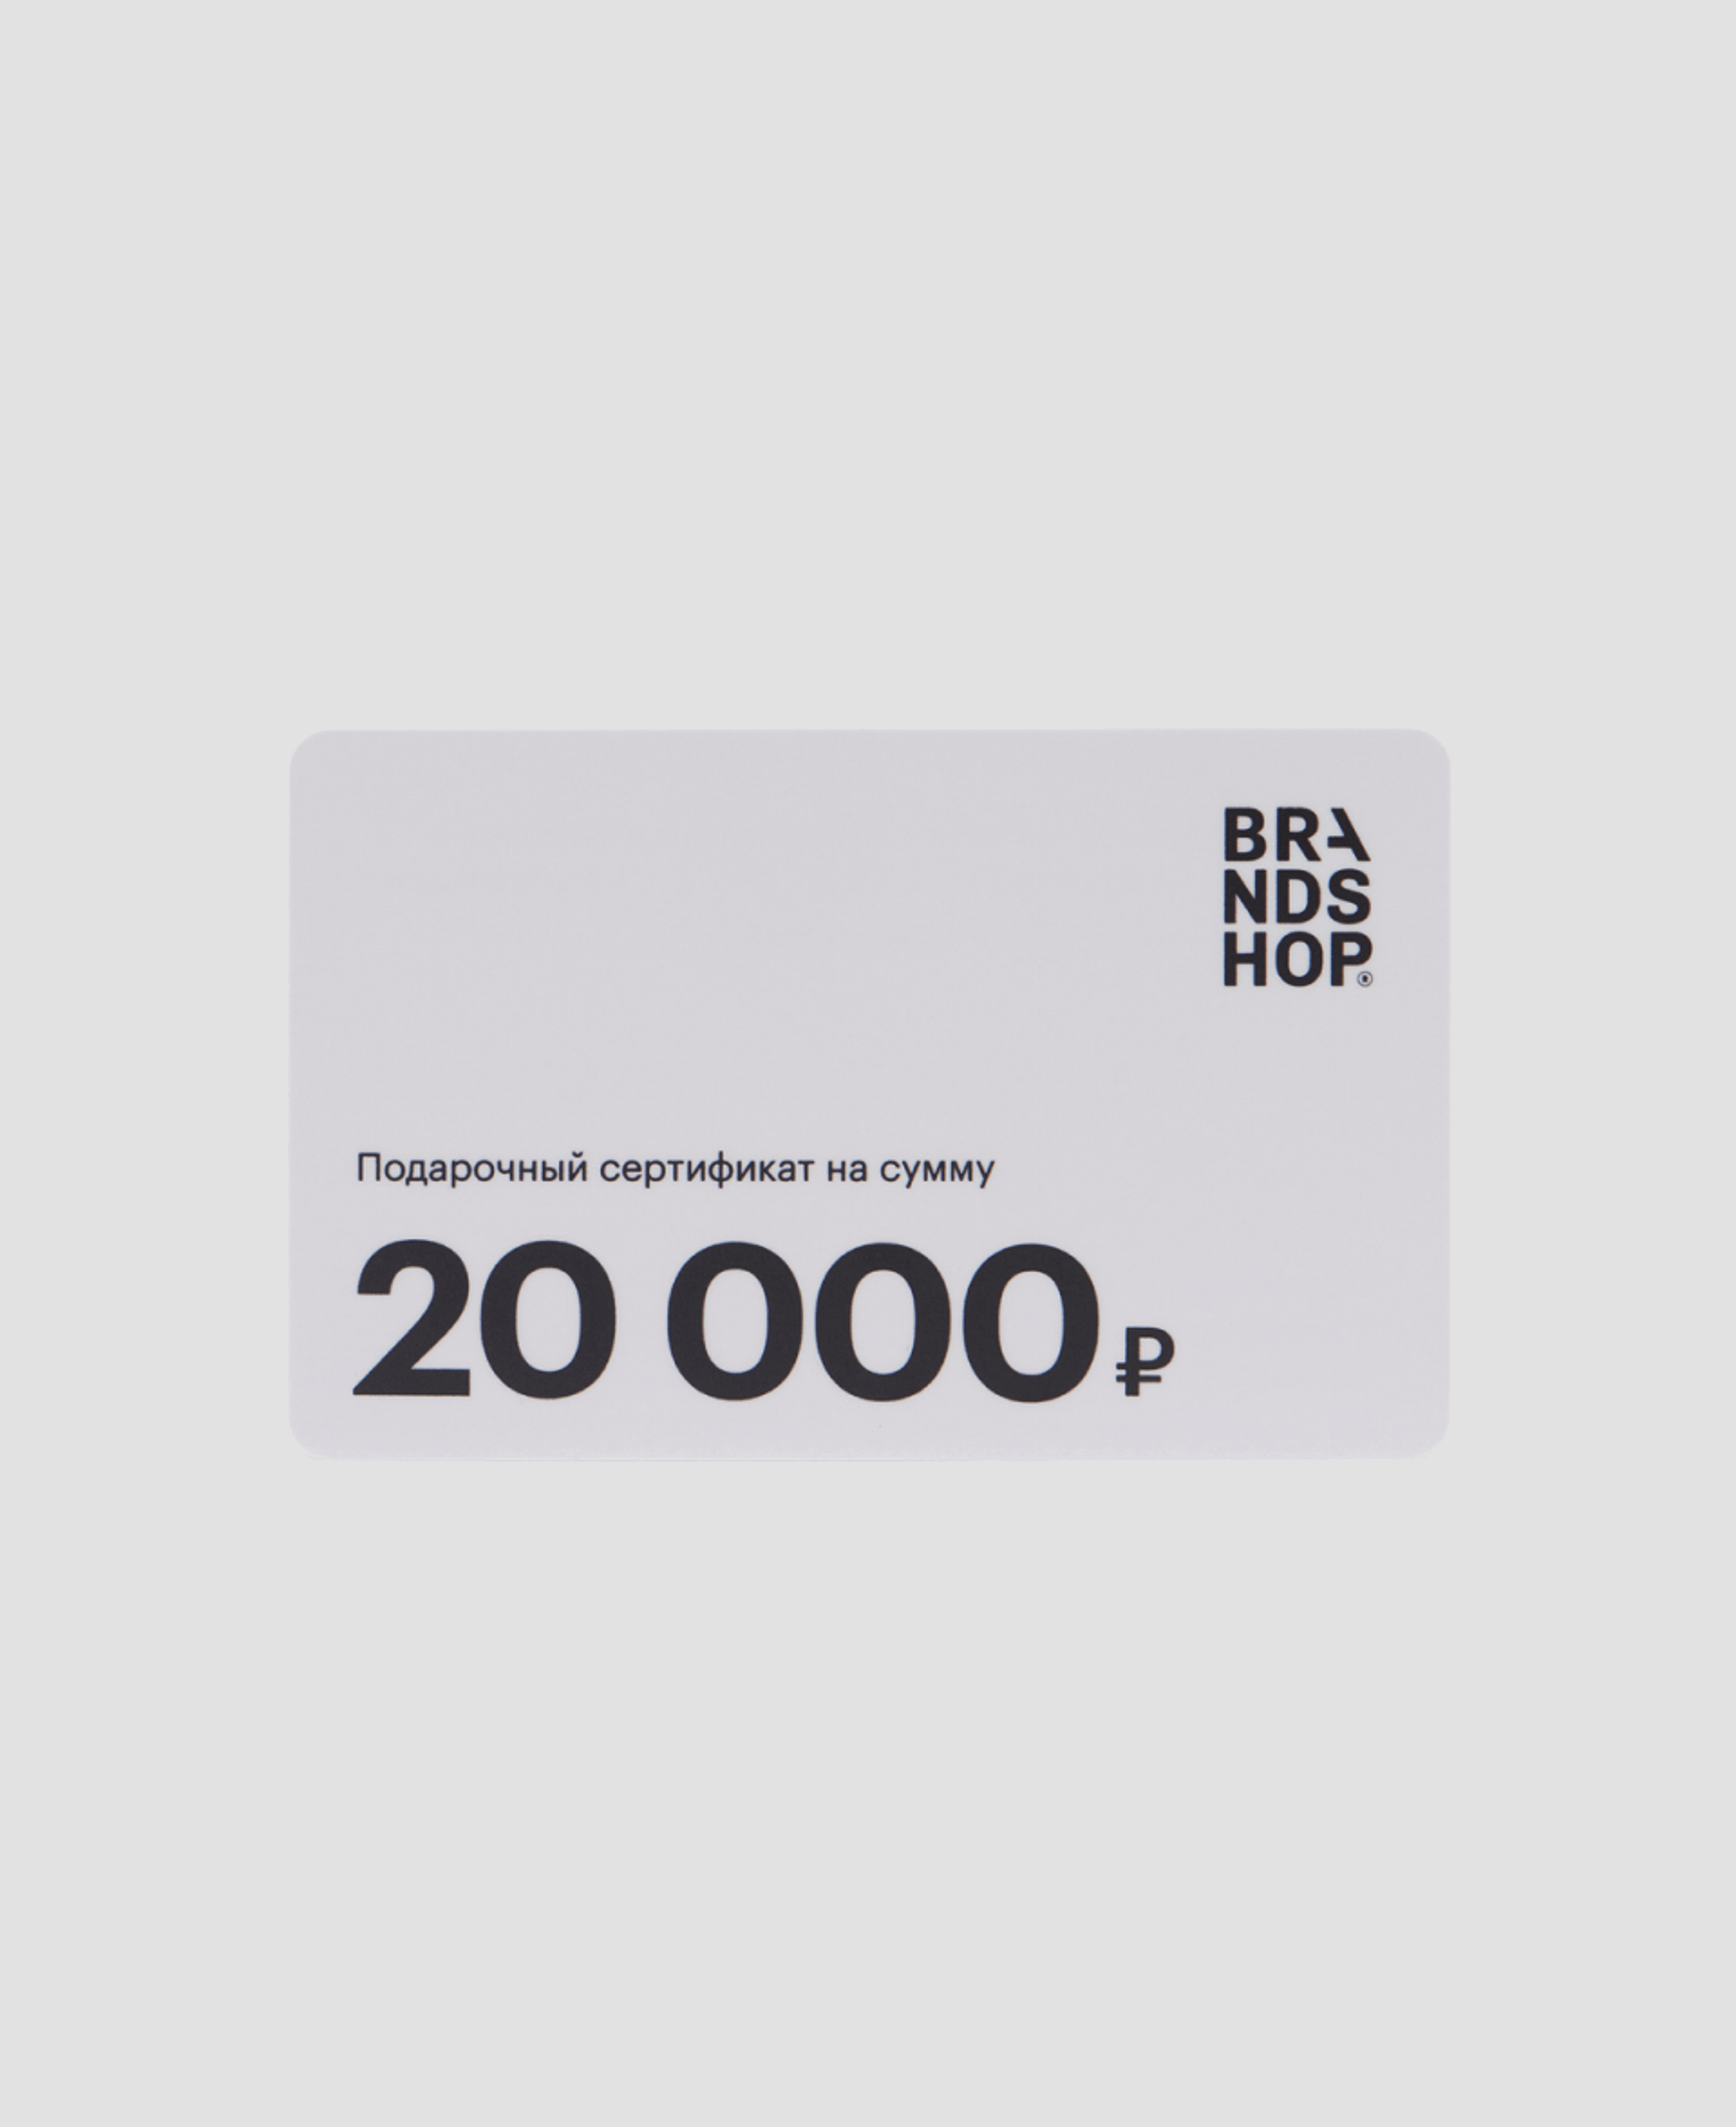 Подарочный сертификат Brandshop  